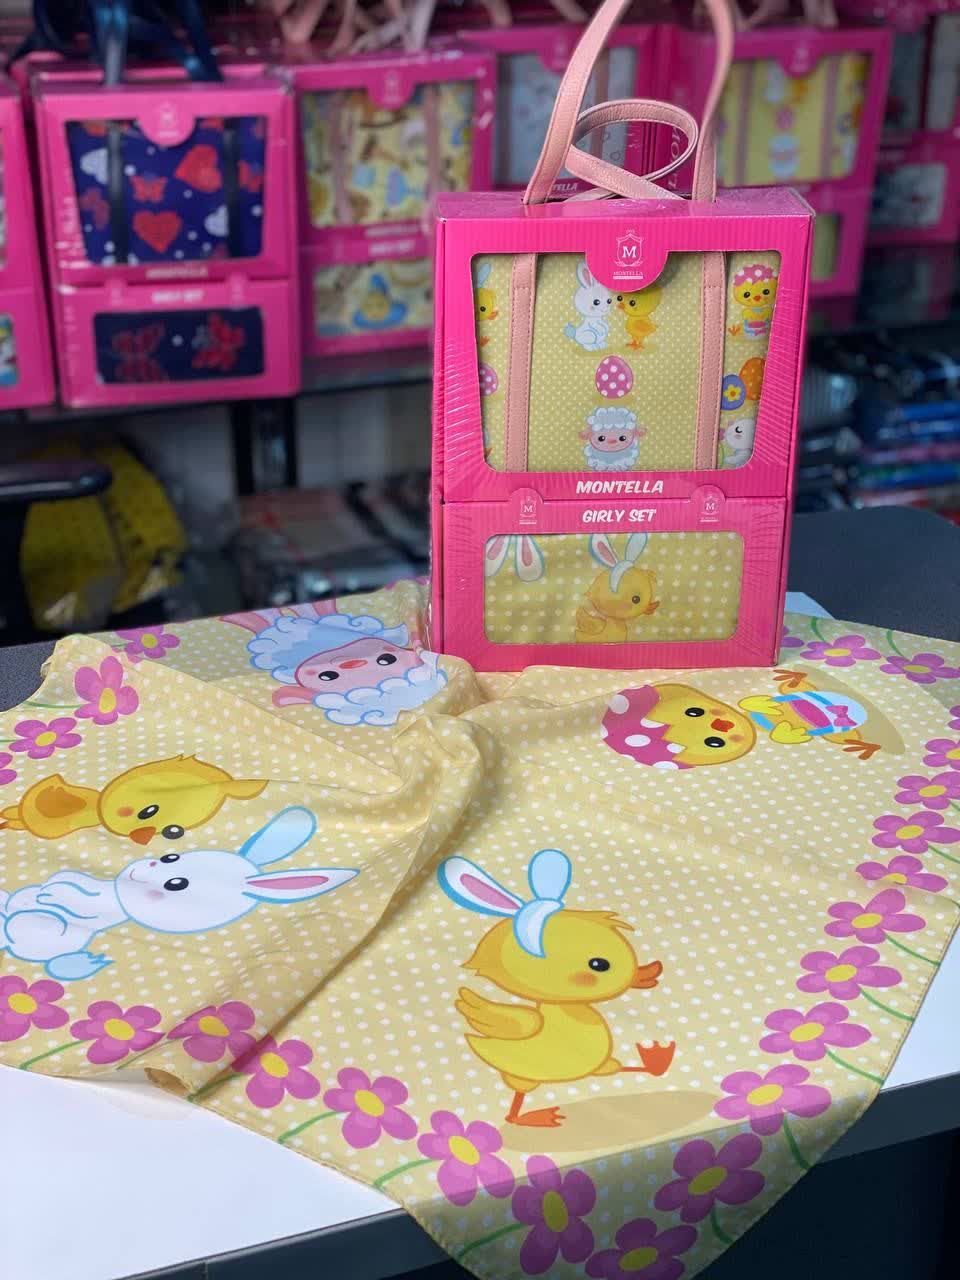 ست کیف و روسری دخترانه طرح عروسکی رنگ زرد با ارسال رایگان کد mo566